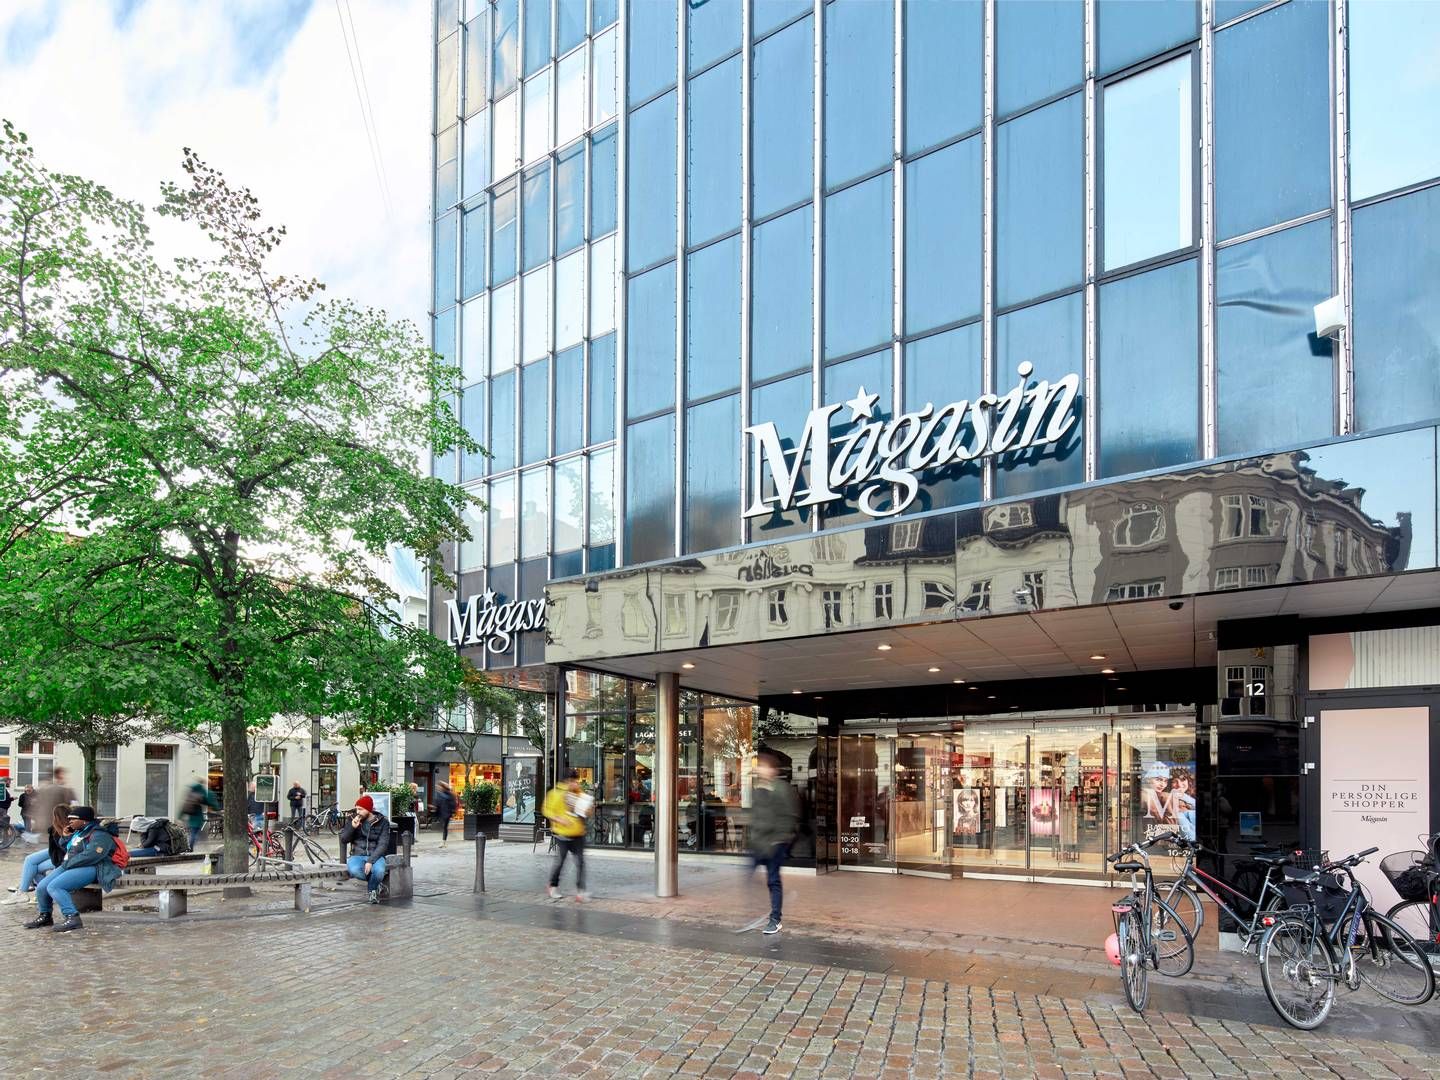 Magasin Aarhus er et af syv danske stormagasiner. Forløberen til det, der i dag er kendt som Magasin, blev stiftet i 1868. | Foto: Lead Agency Pr